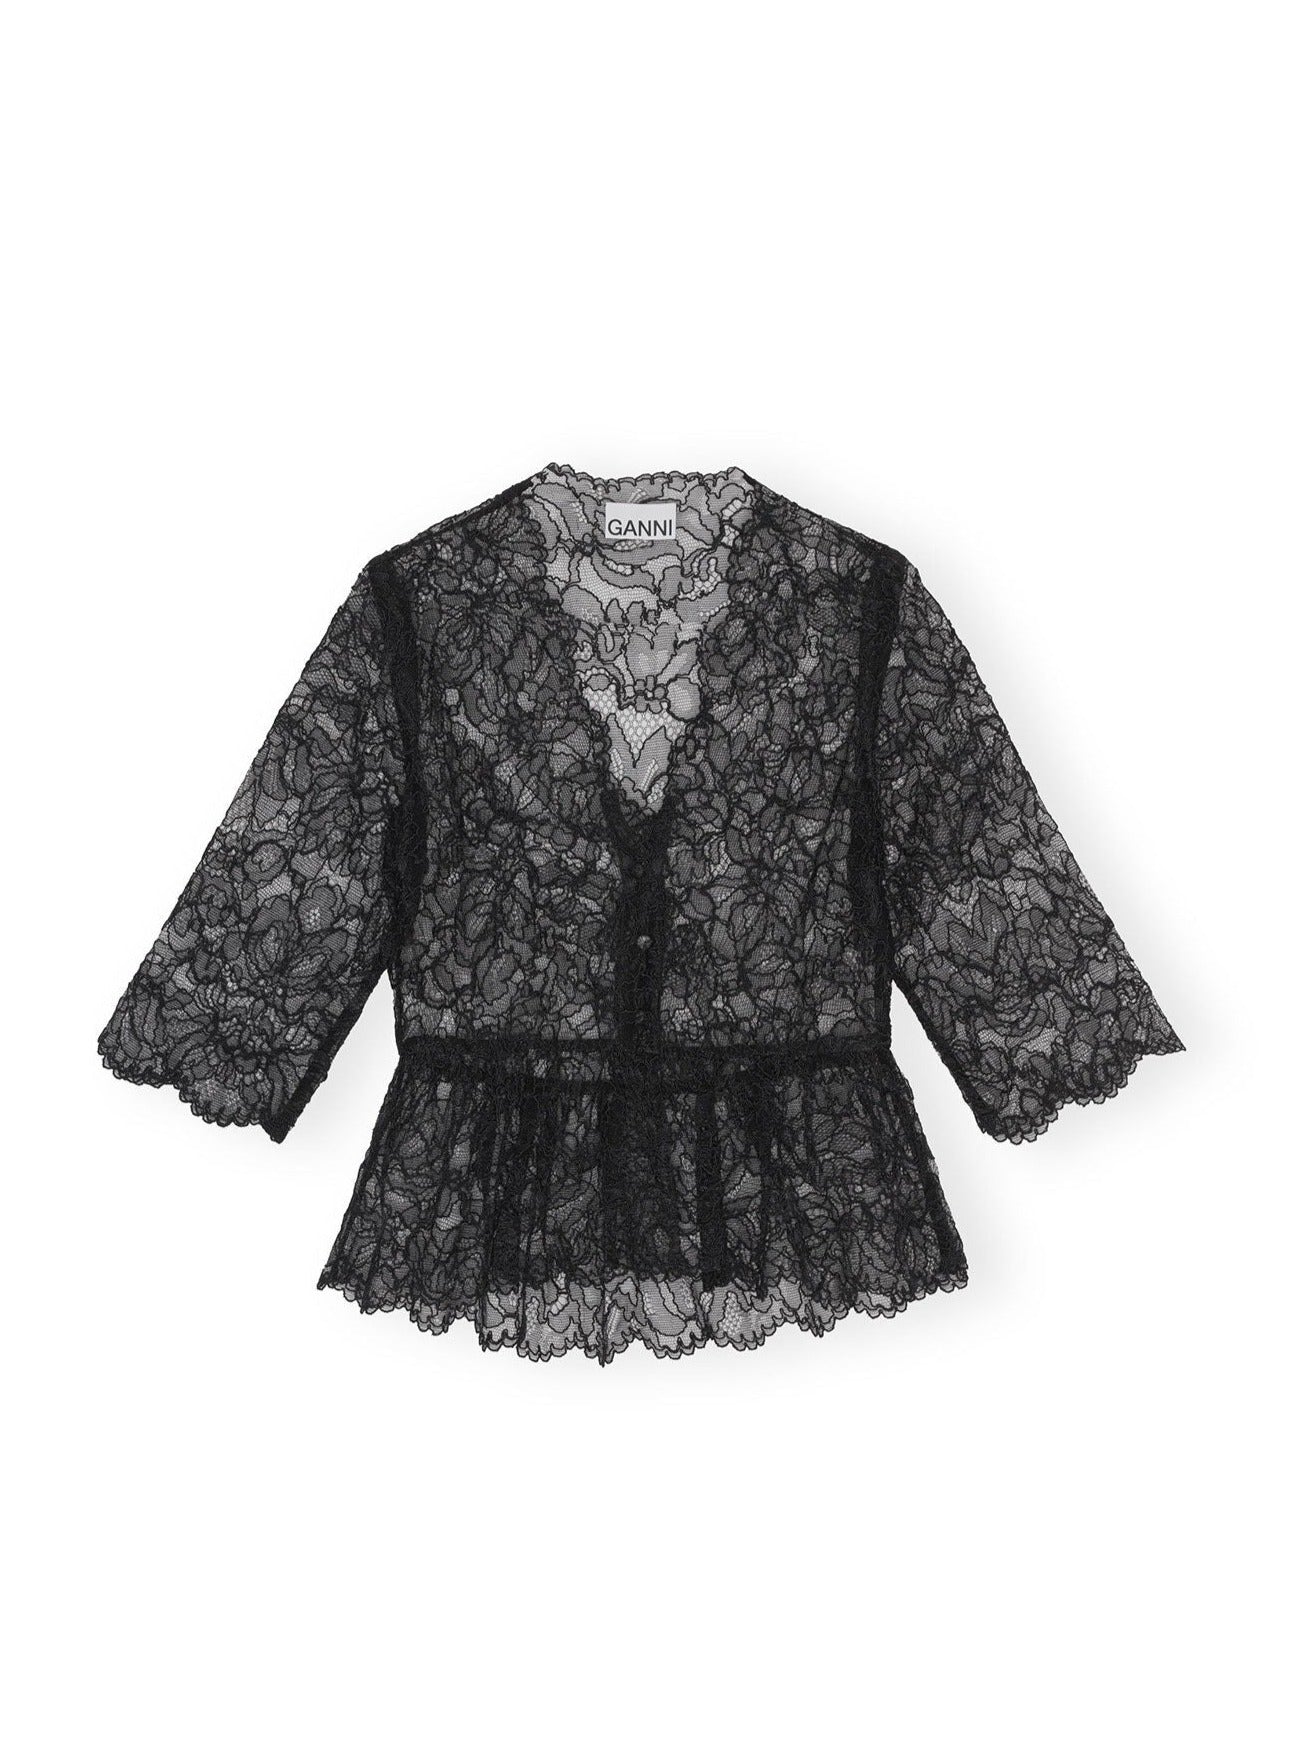 Light lace V-neck blouse, black